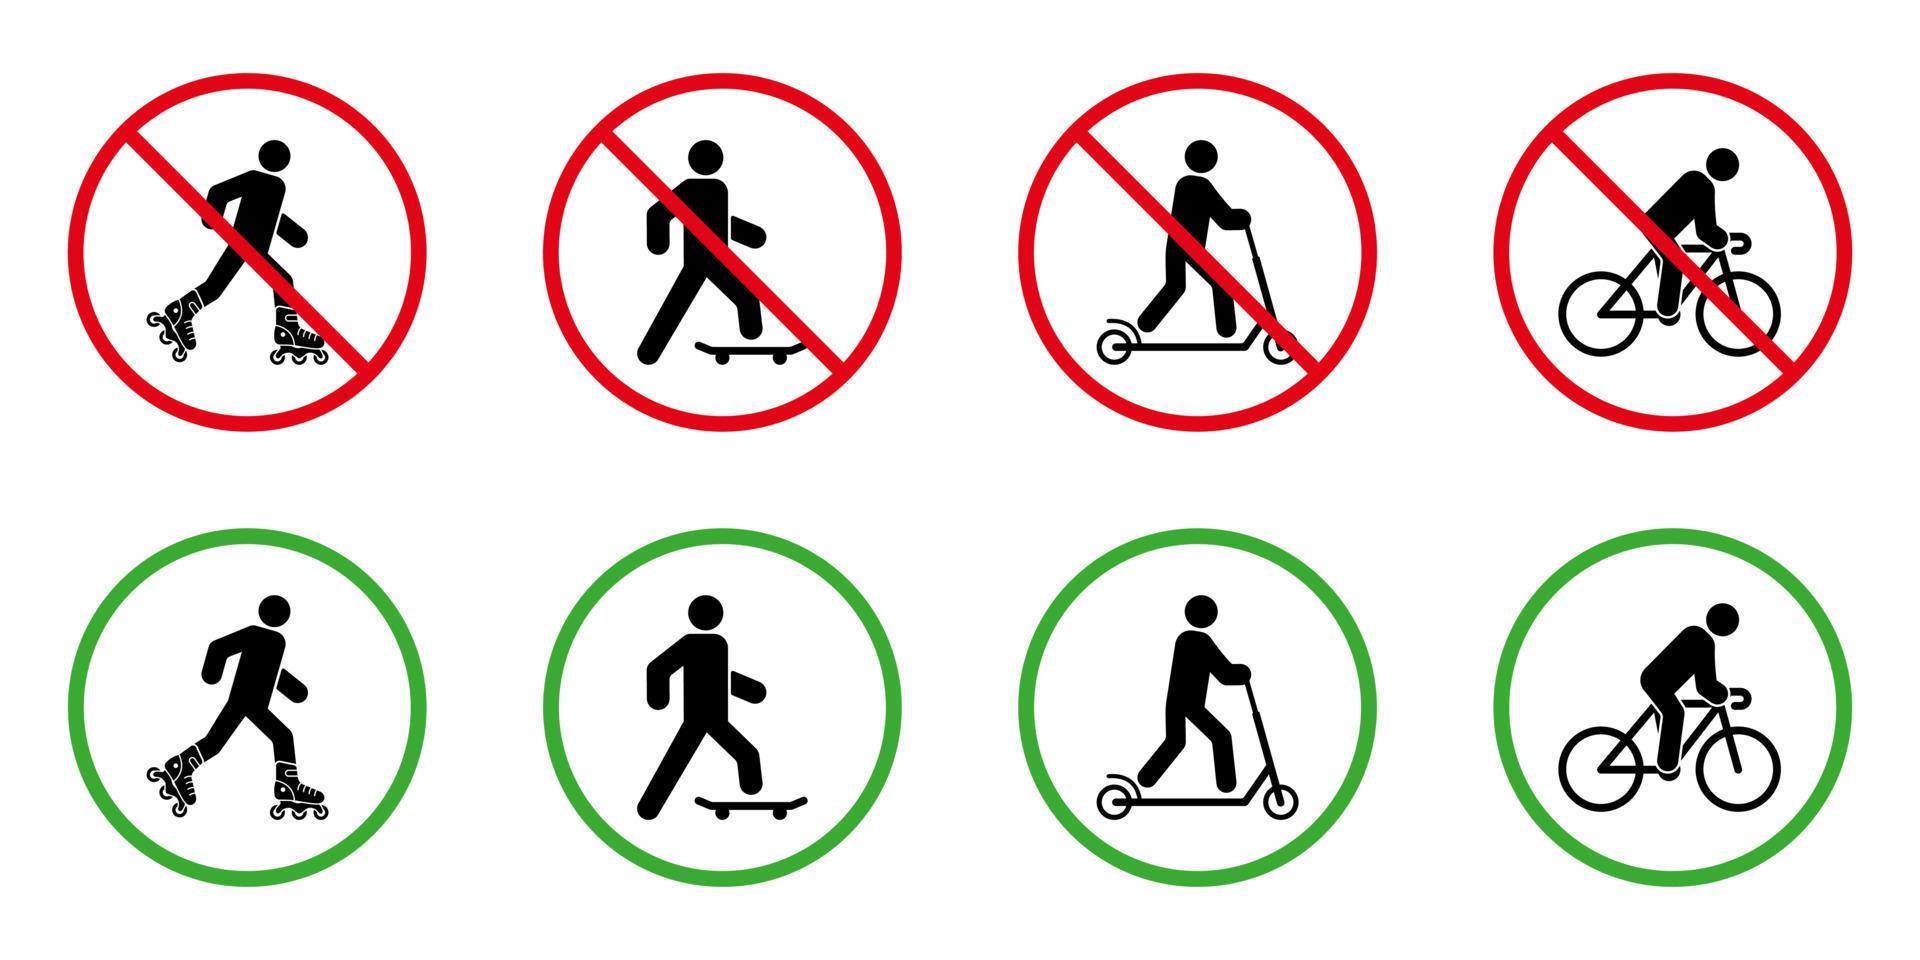 varning förbjuda rullskridsko skateboard cykel sparka skoter piktogram uppsättning. Nej tillåta hjul eco transport tecken. tillåta vält skridsko styrelse cykel sparka skoter grön ikon. isolerat vektor illustration.